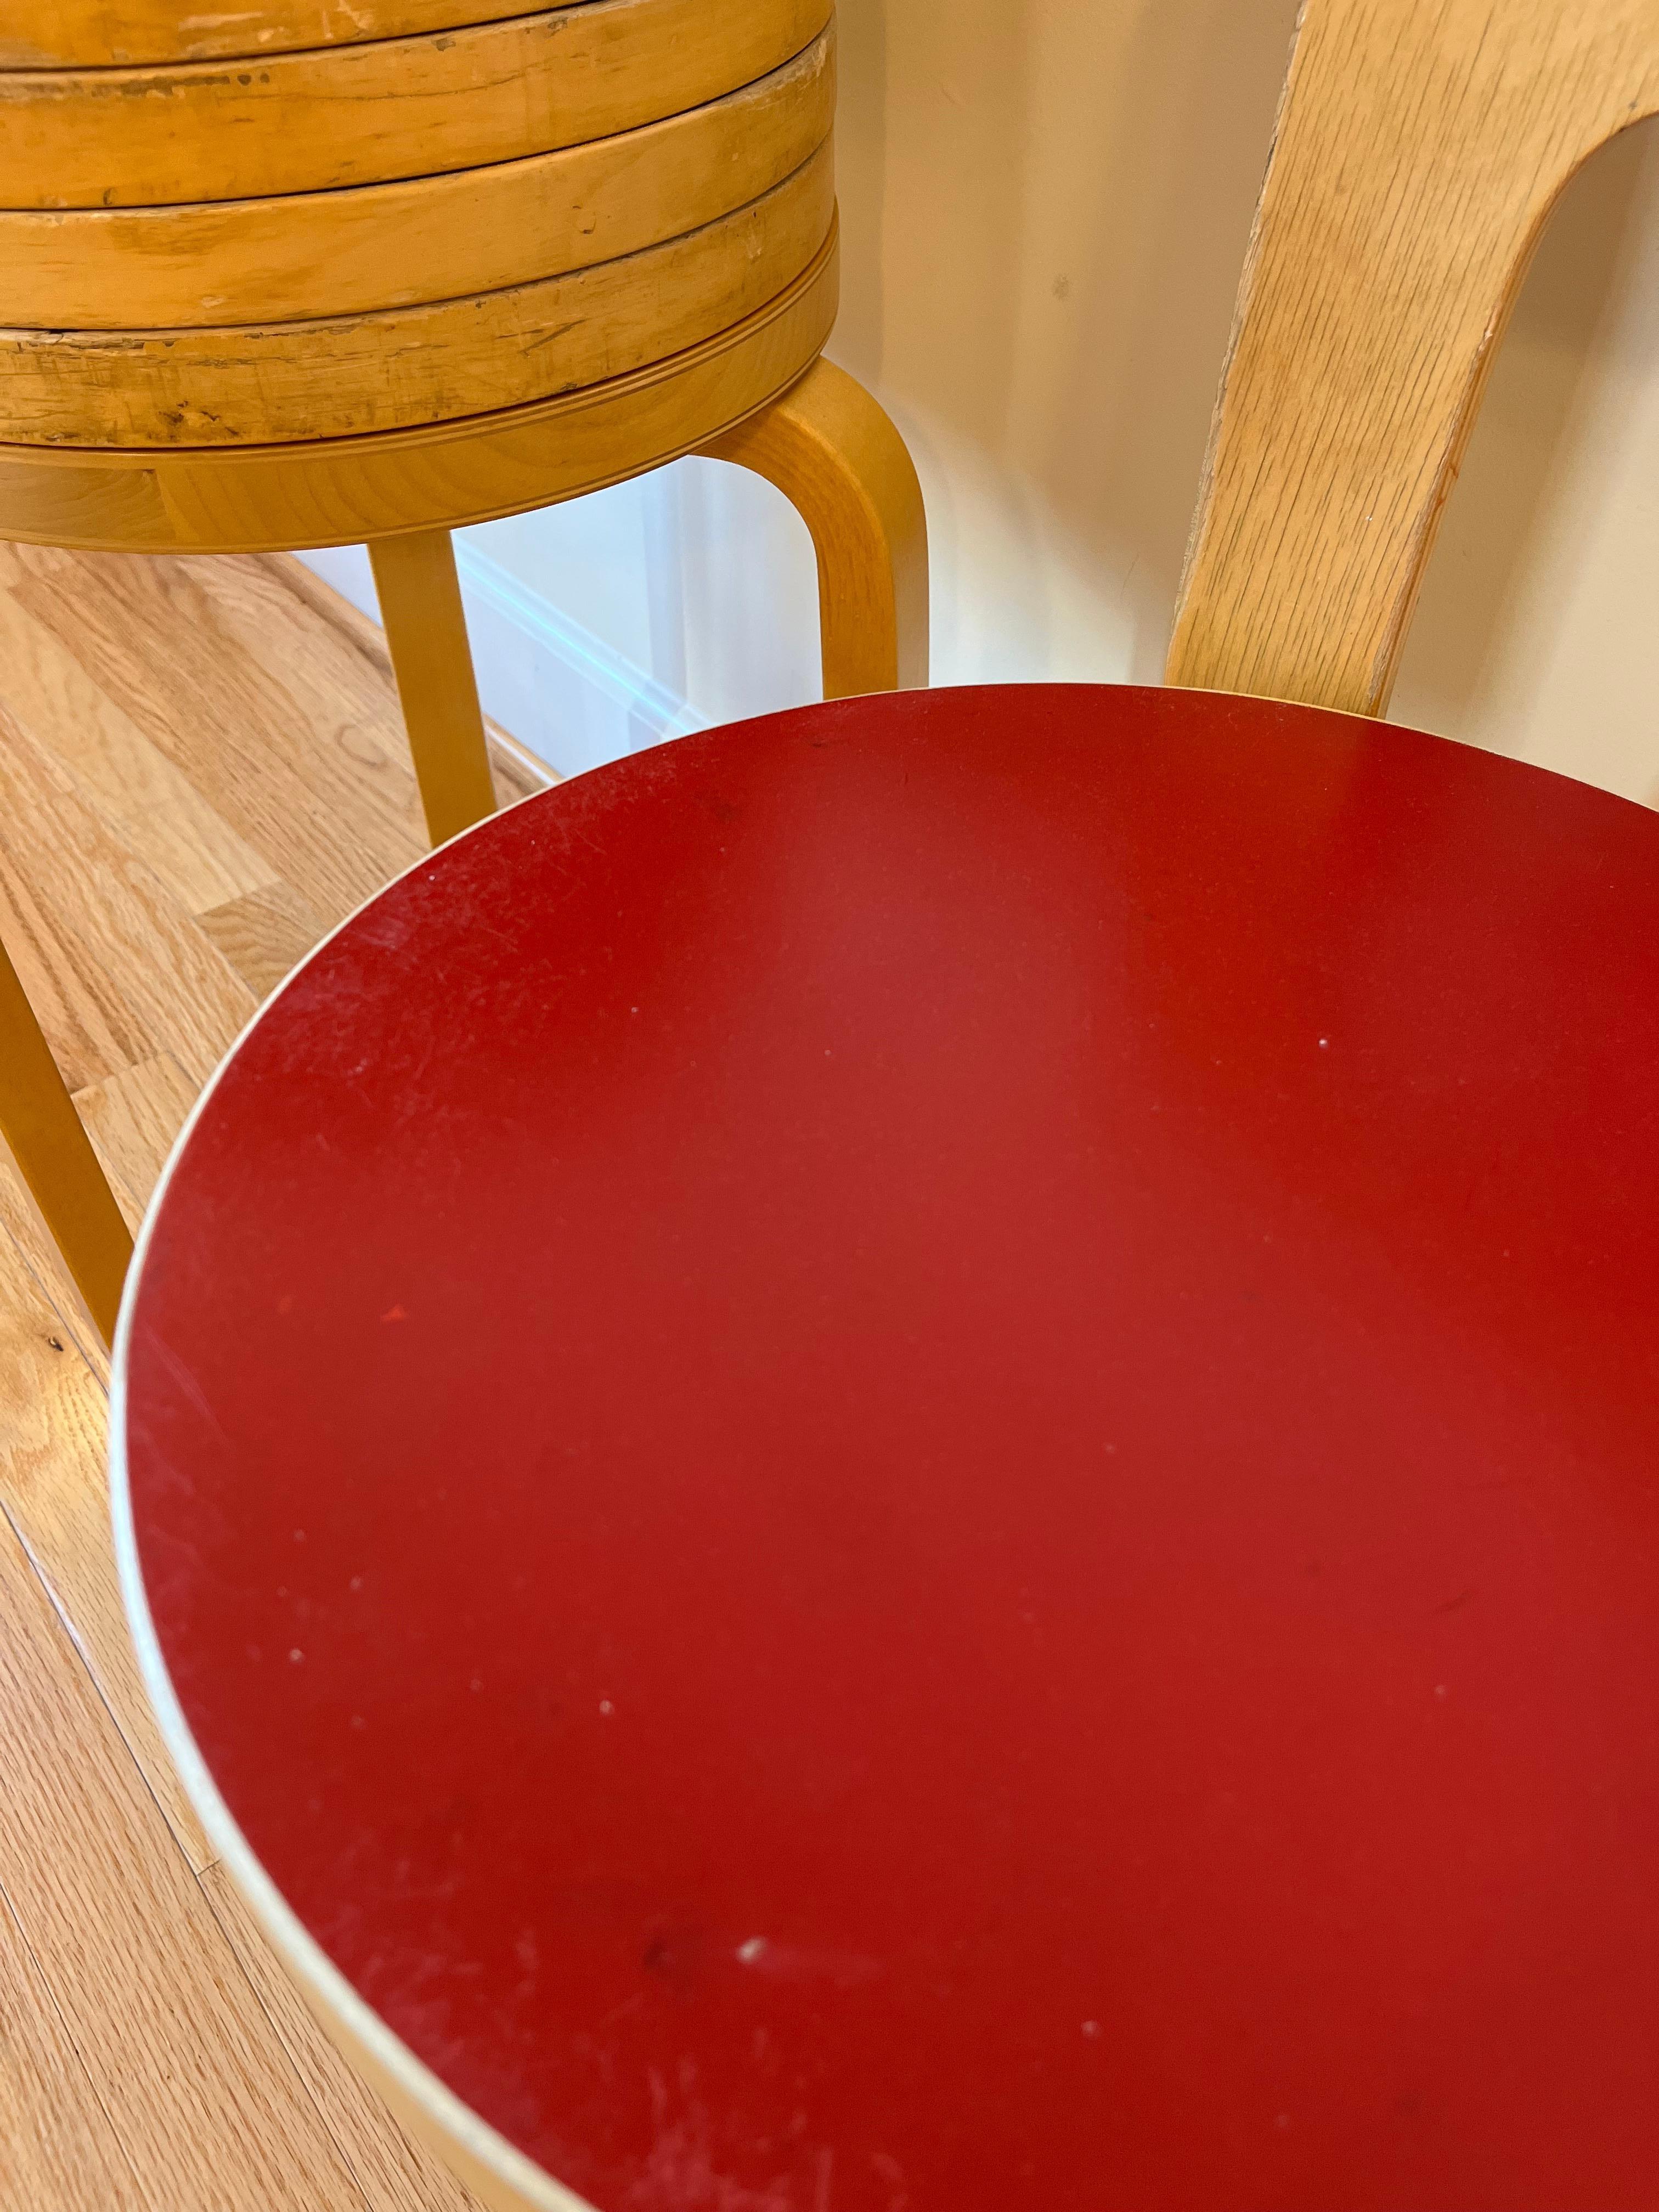 Chair 65 by Alvar Aalto for Artek (Red Linoleum) 5